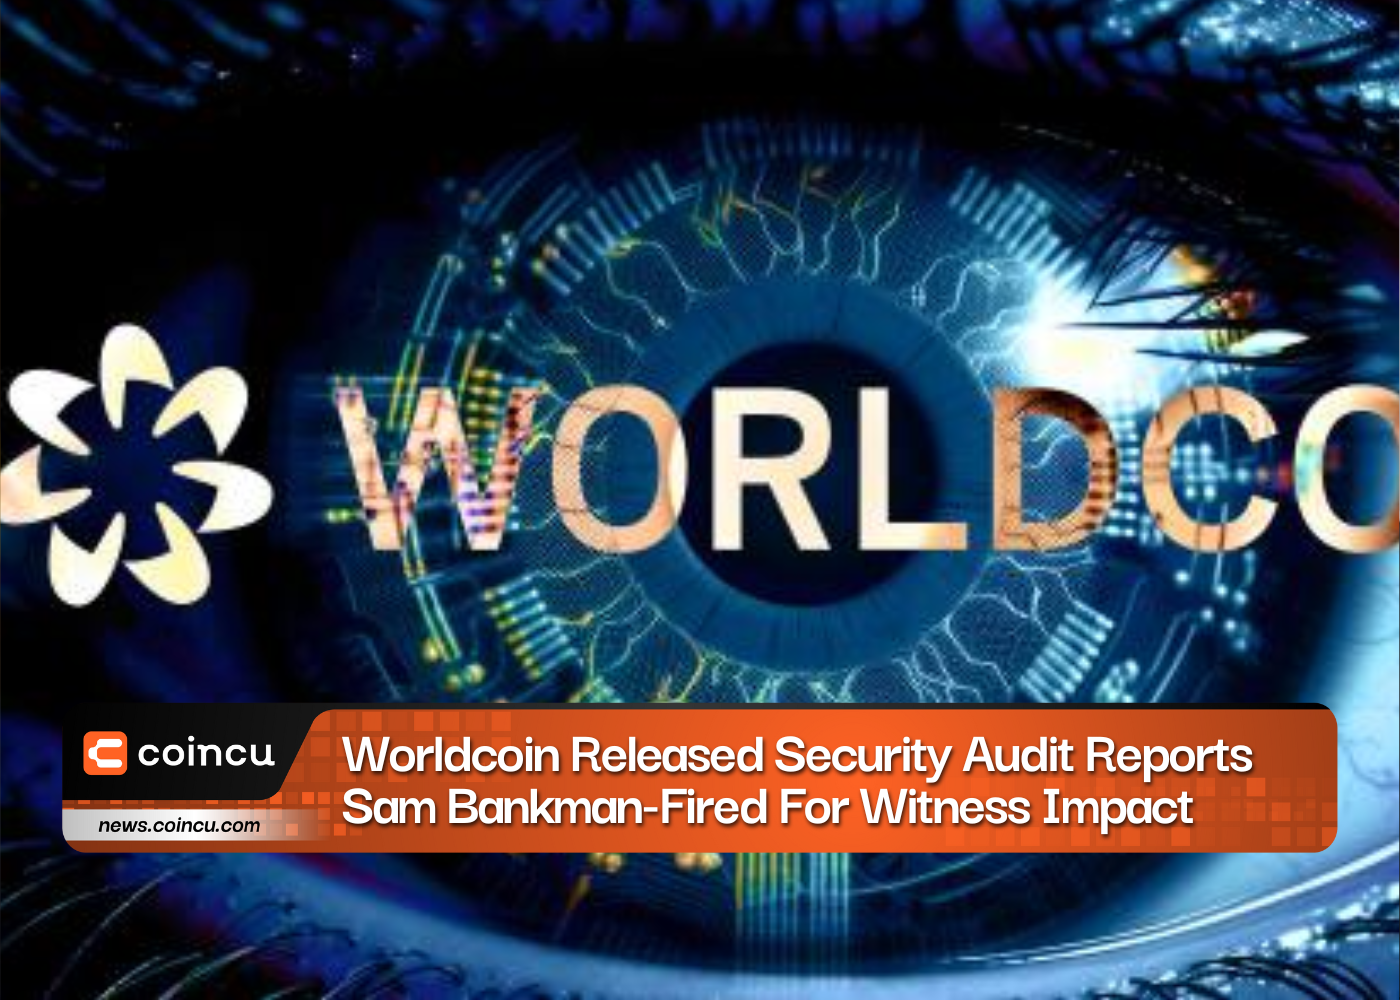 वर्ल्डकॉइन ने सुरक्षा ऑडिट रिपोर्ट जारी की, 92.6% सुरक्षा मुद्दे ठीक किए गए